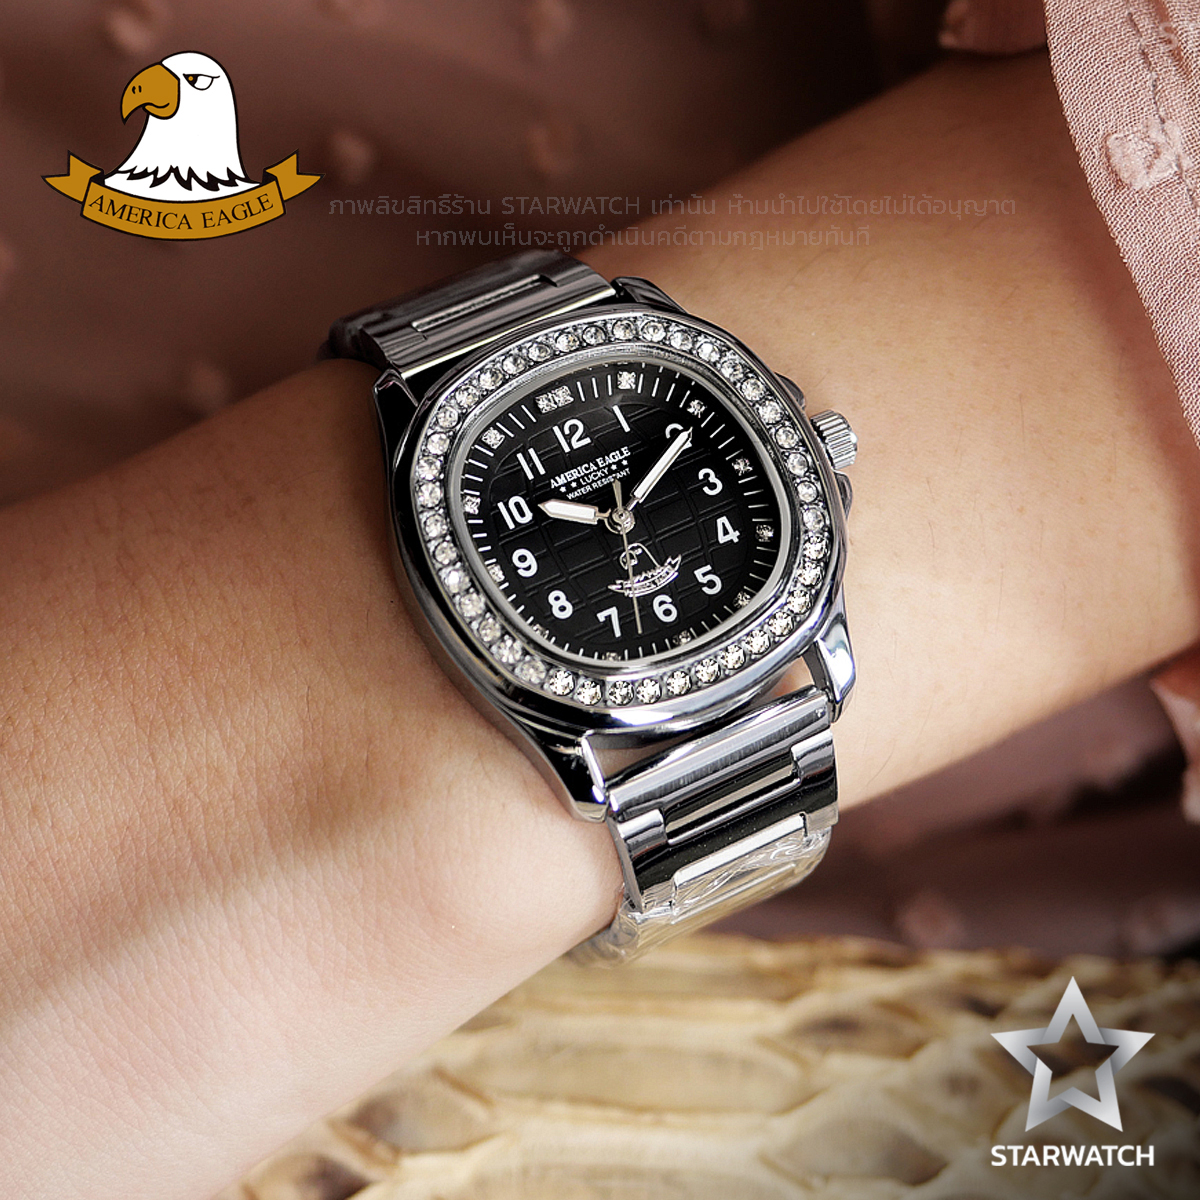 โปรโมชั่น Flash Sale : GRAND EAGLE นาฬิกาข้อมือผู้หญิง สายสแตนเลส รุ่น AE8036L – SILVER/BLACK